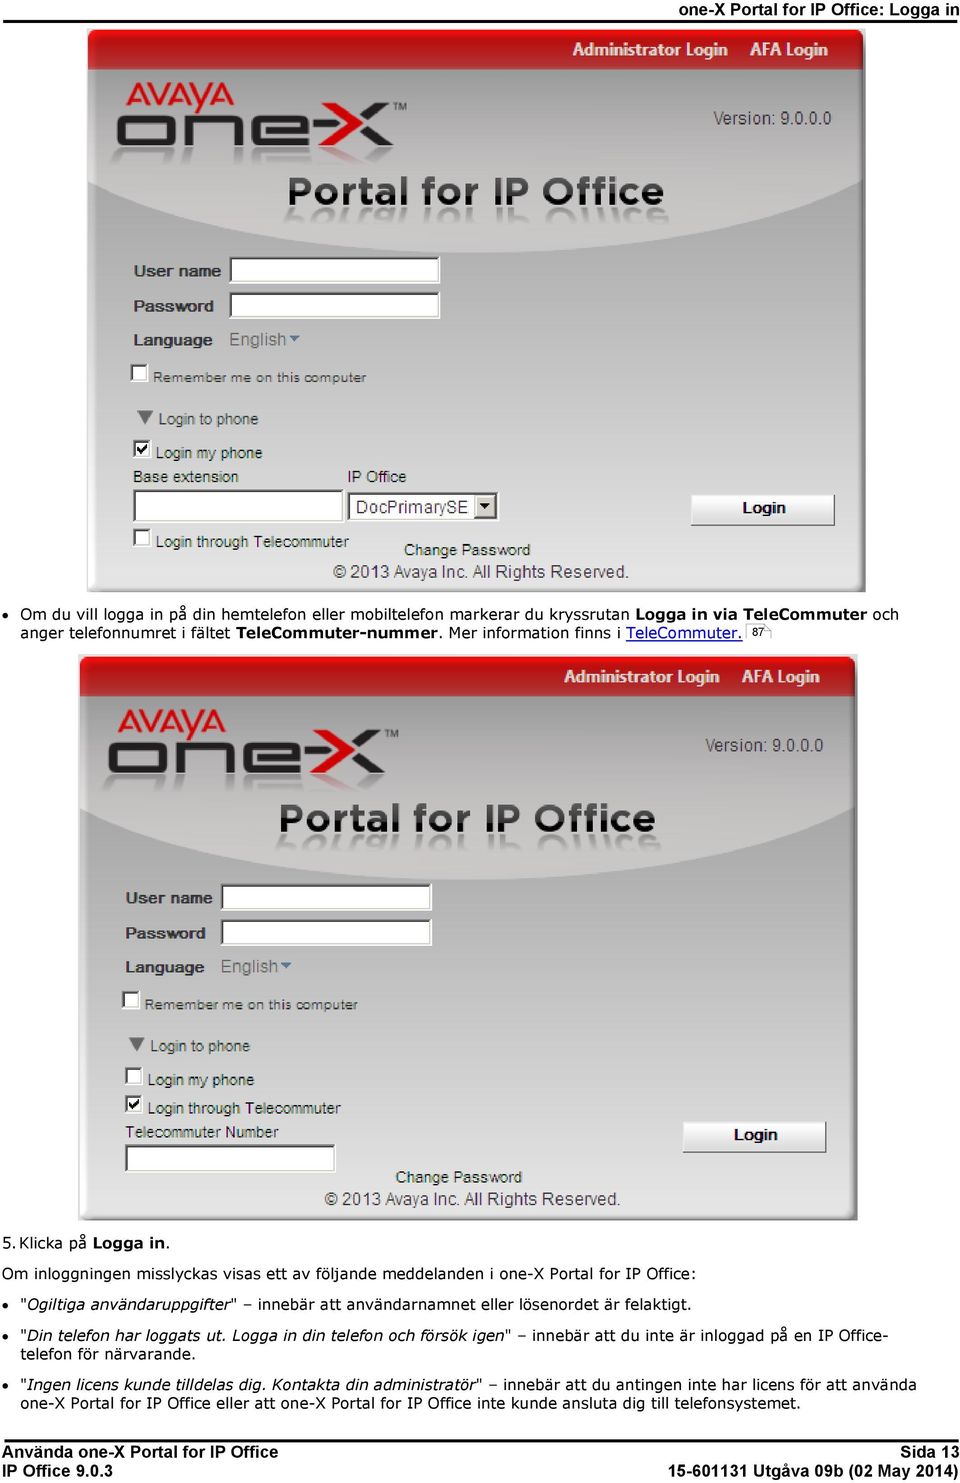 Om inloggningen misslyckas visas ett av följande meddelanden i one-x Portal for IP Office: "Ogiltiga användaruppgifter" innebär att användarnamnet eller lösenordet är felaktigt.